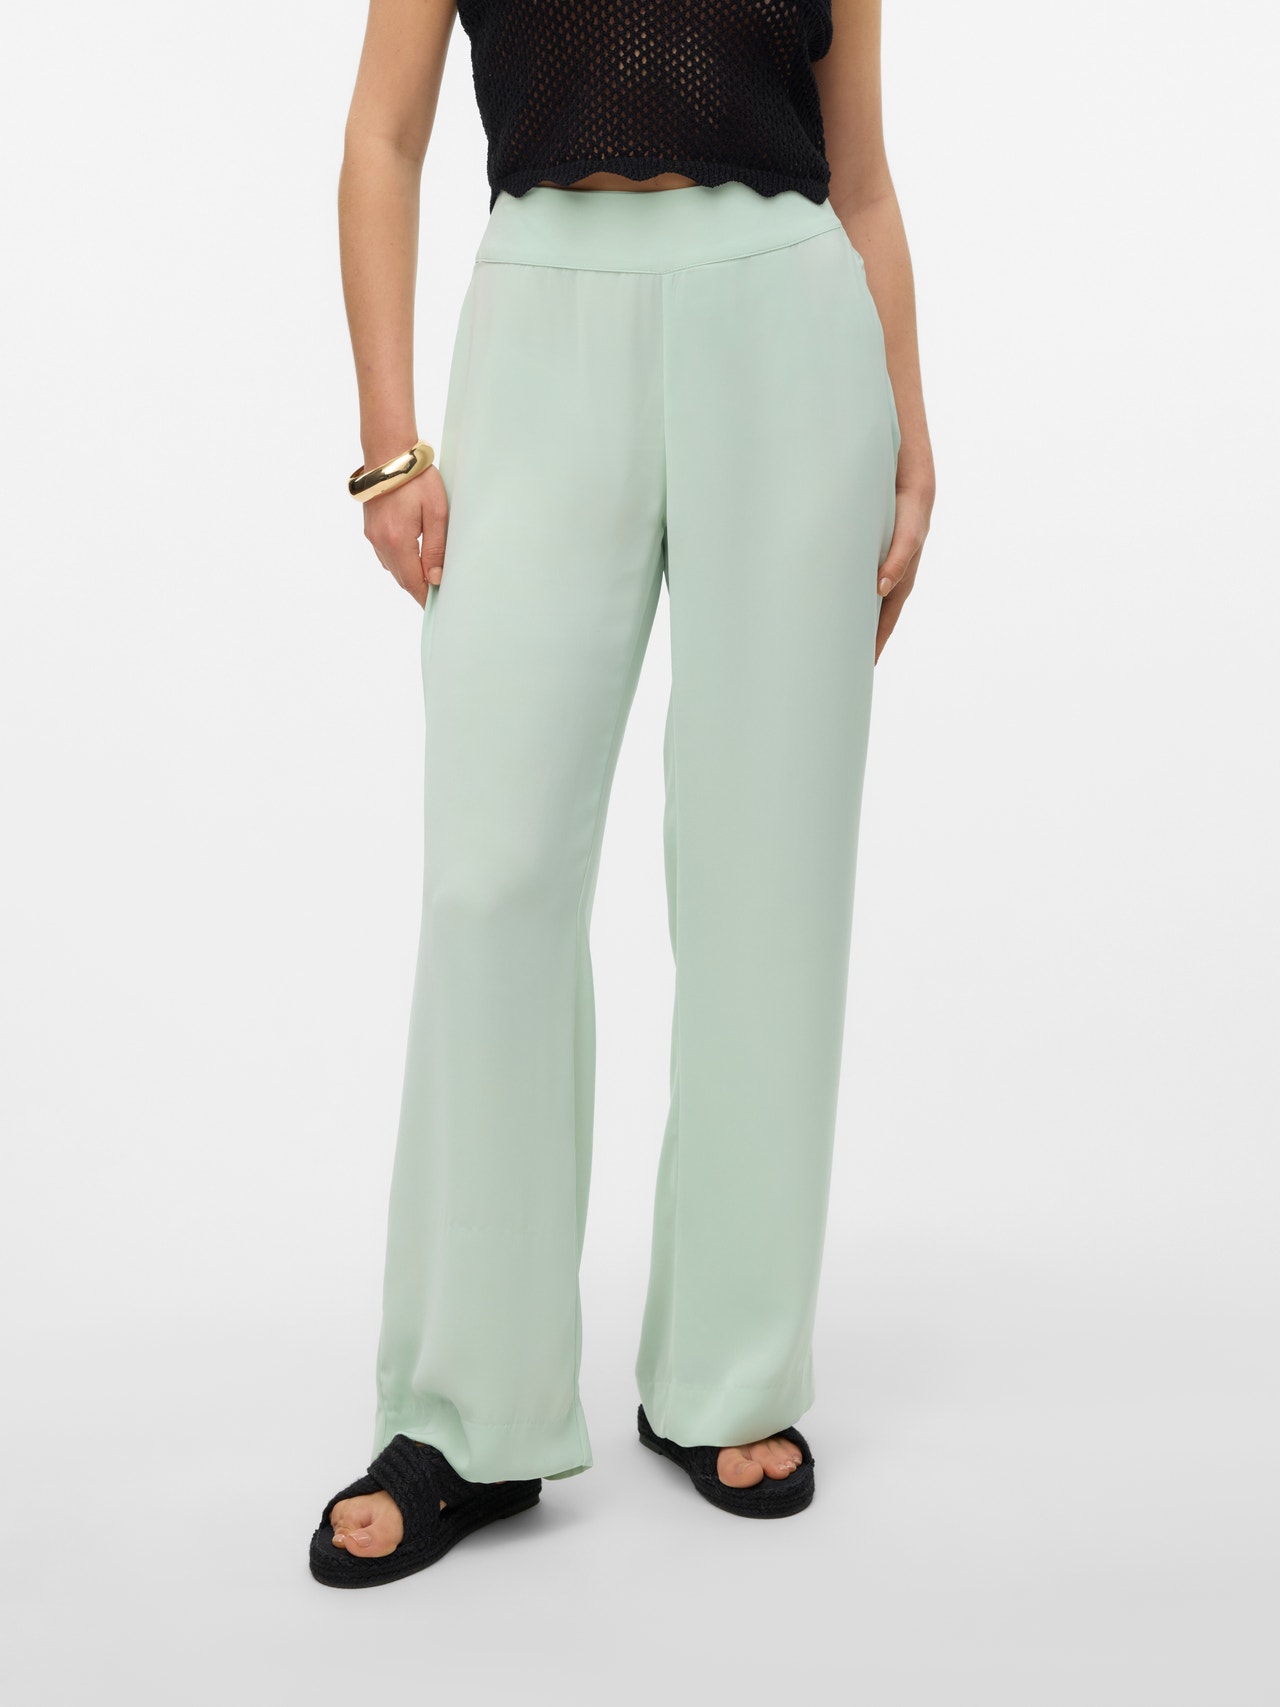 Vero Moda VMGISELLE Taille haute Pantalons -Celadon - 10295598